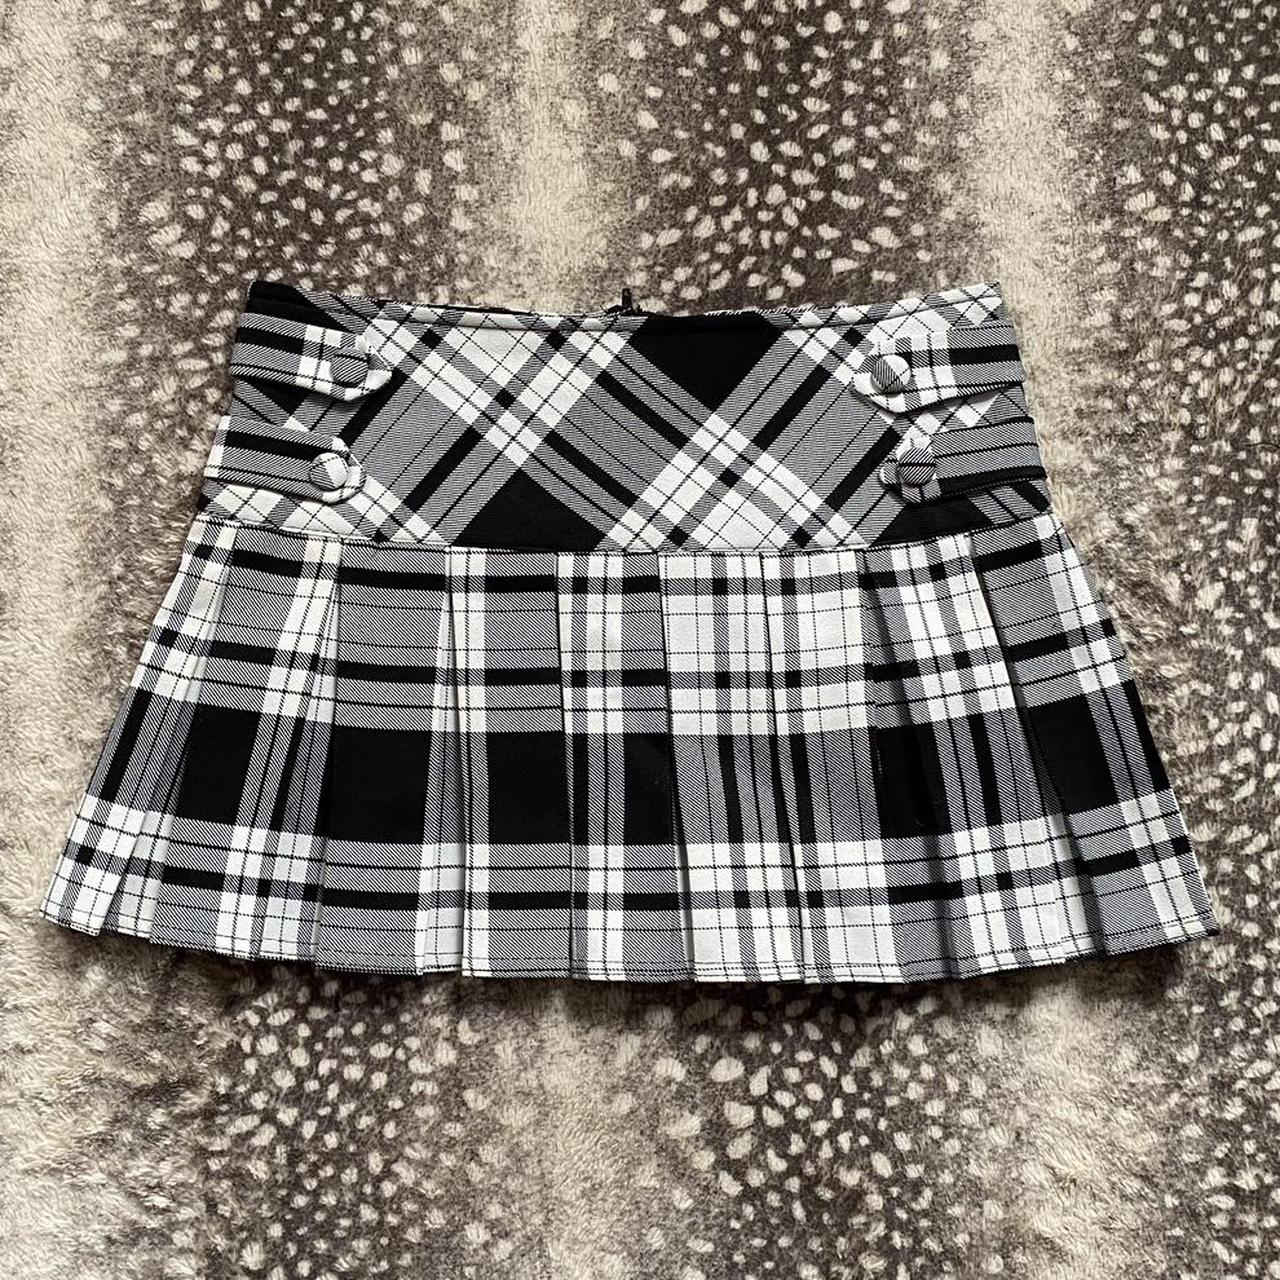 Vintage pleated black and white plaid mini skirt... - Depop